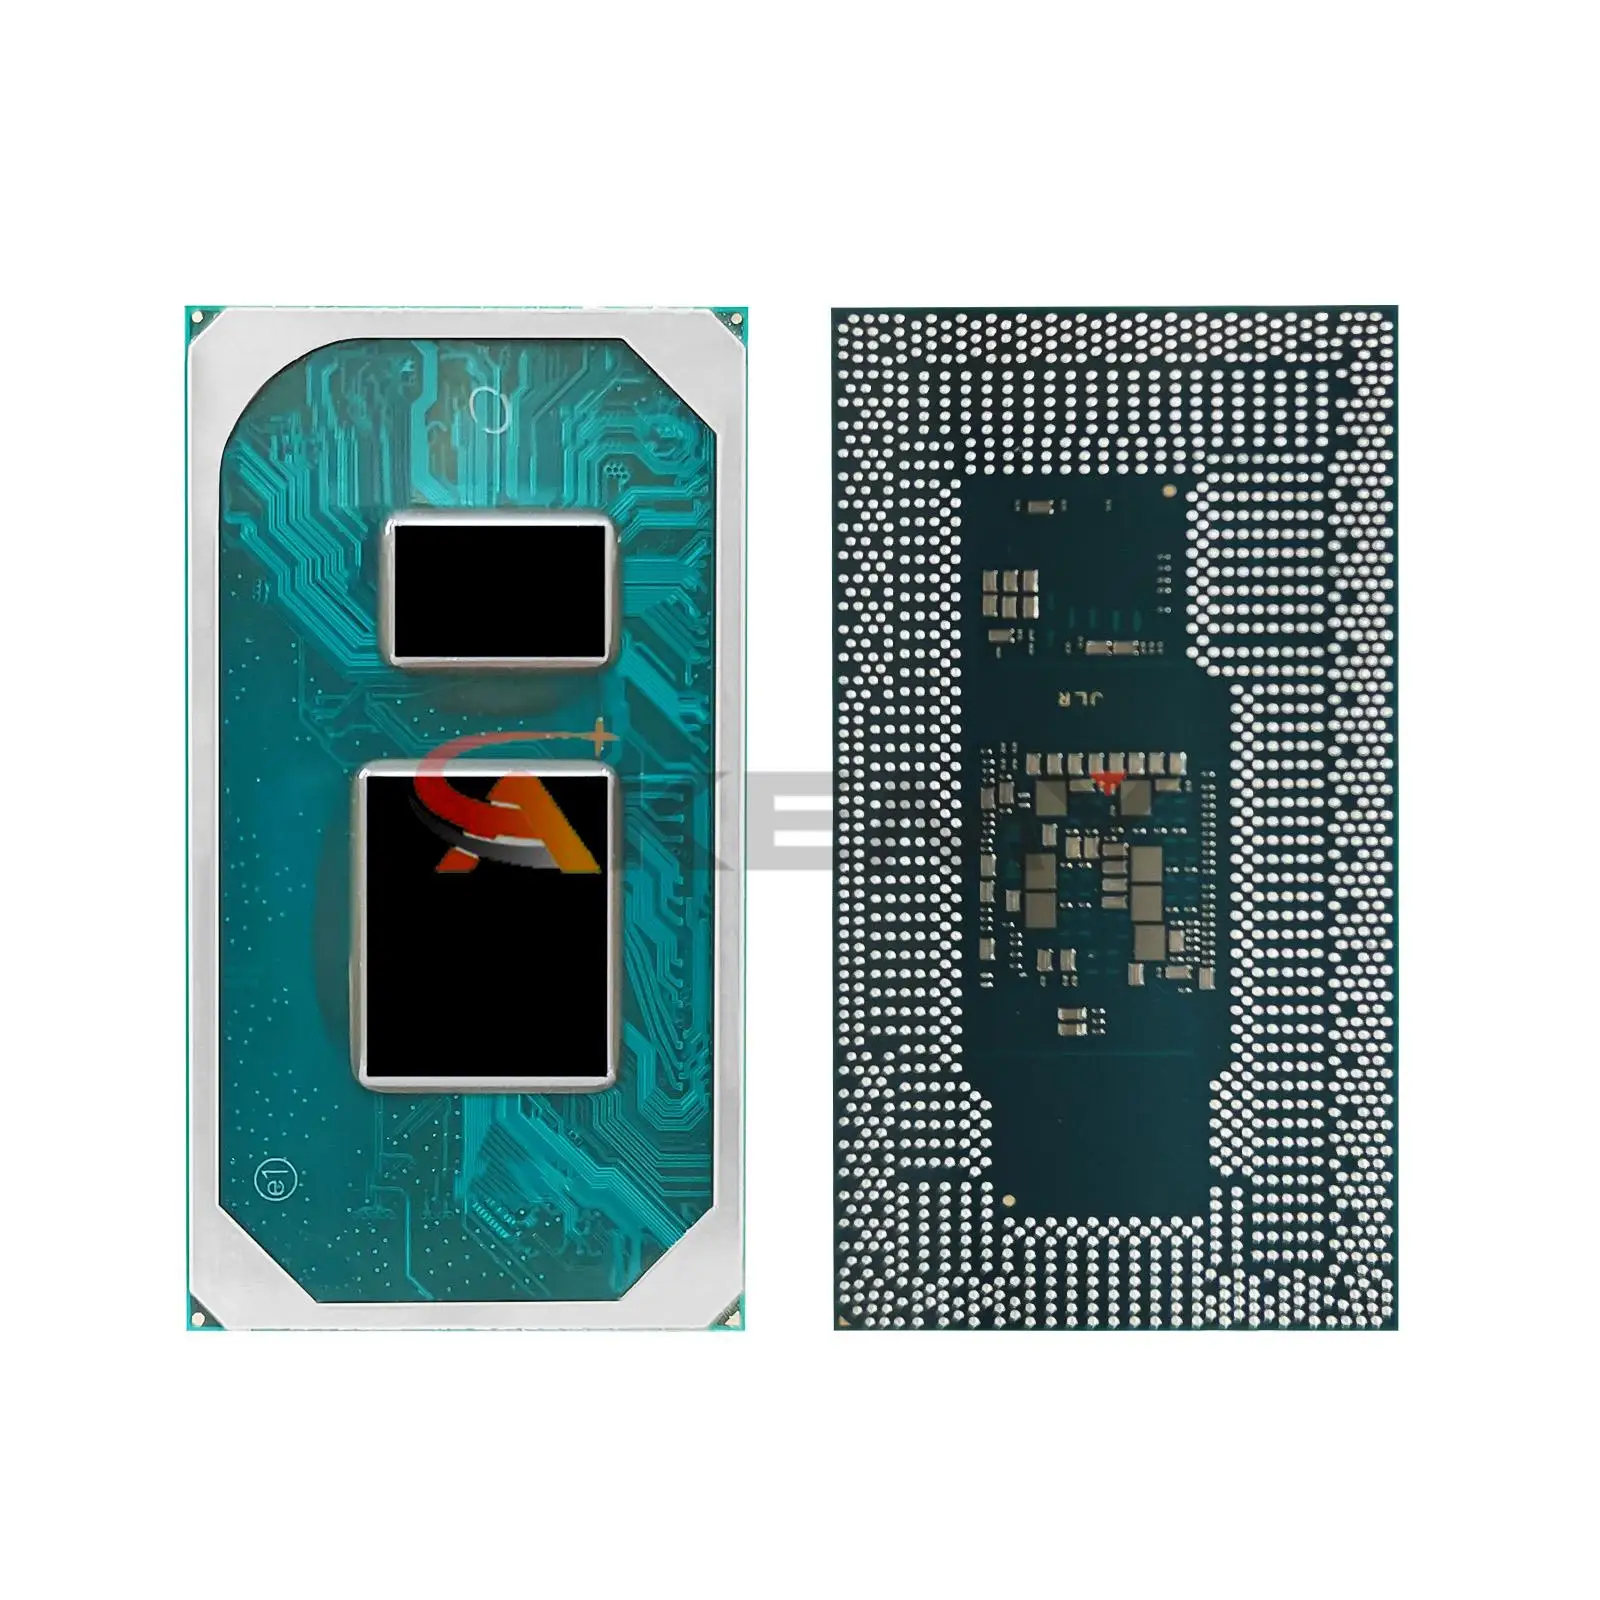 100% test I5 1135G7 SRK04 I5-1135G7 CPU BGA Chipset